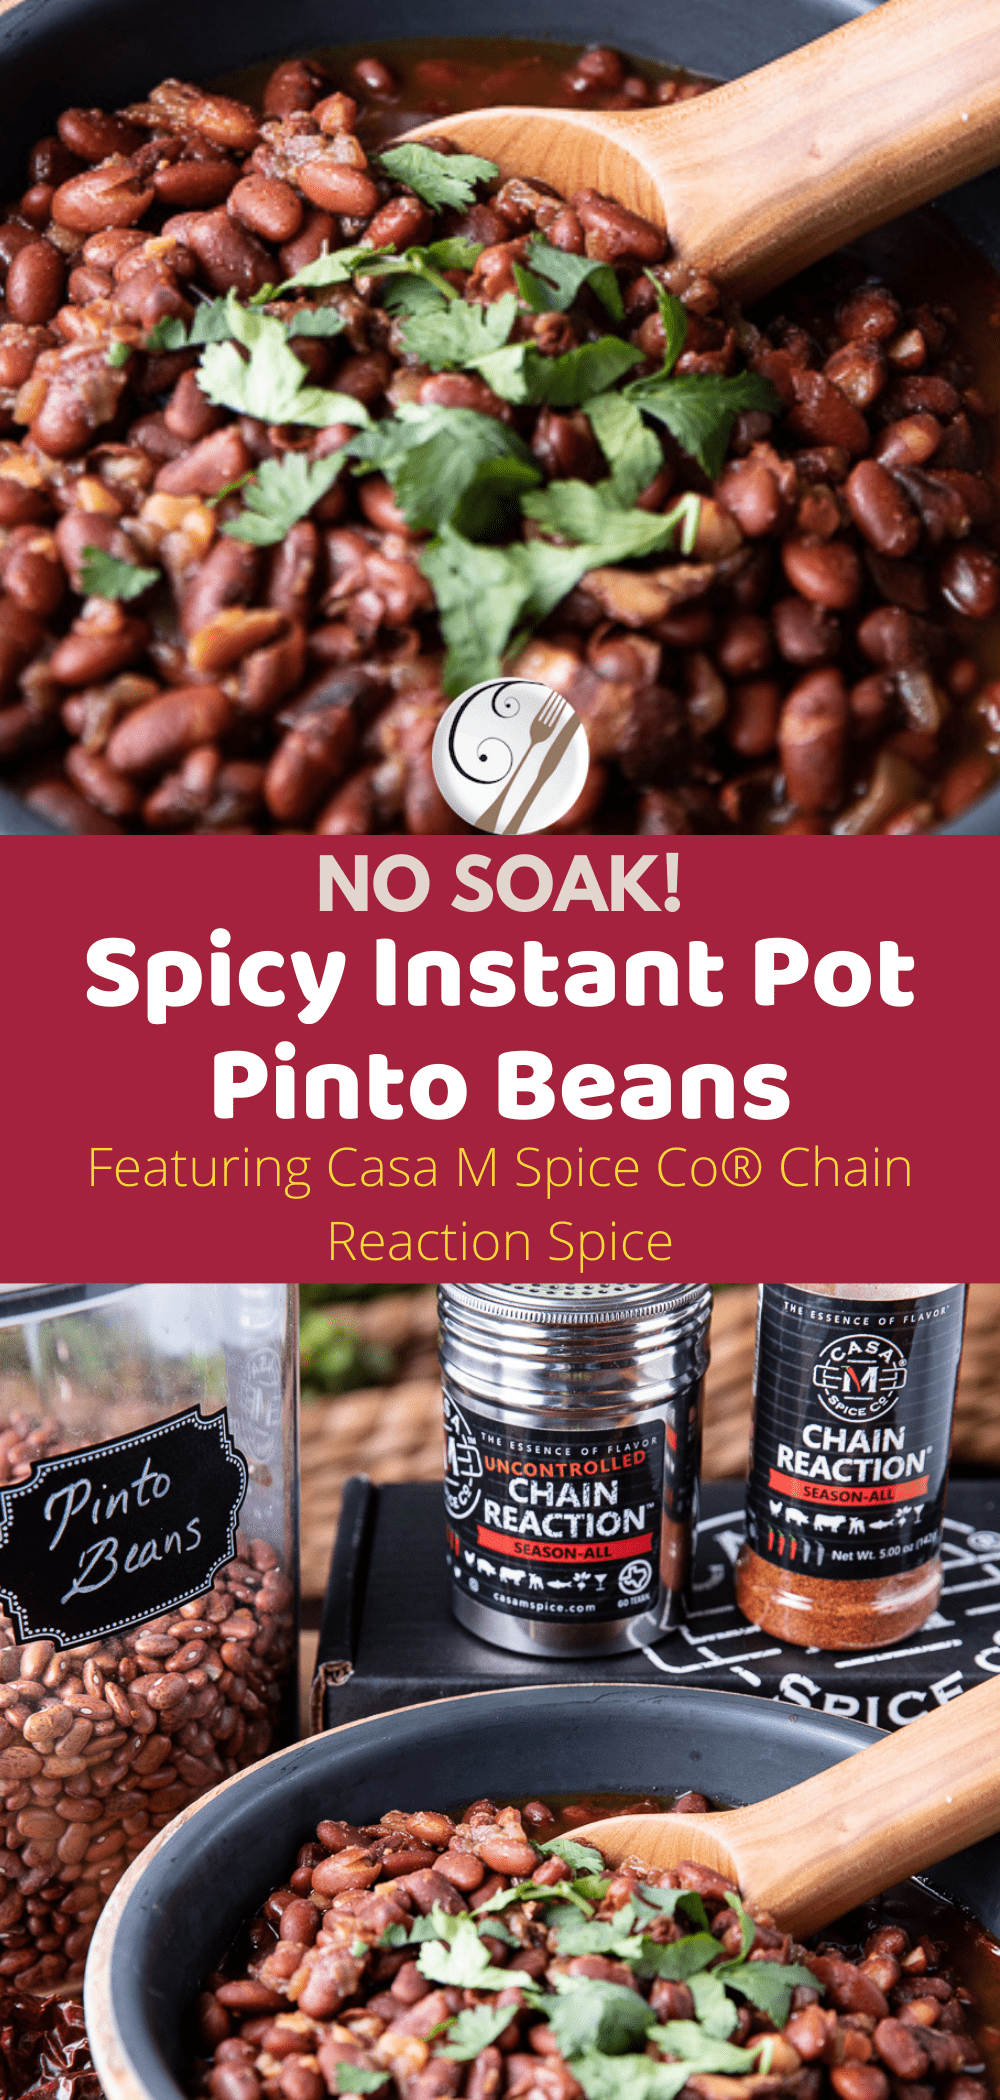 Spicy Instant Pot Pinto Beans - no soak